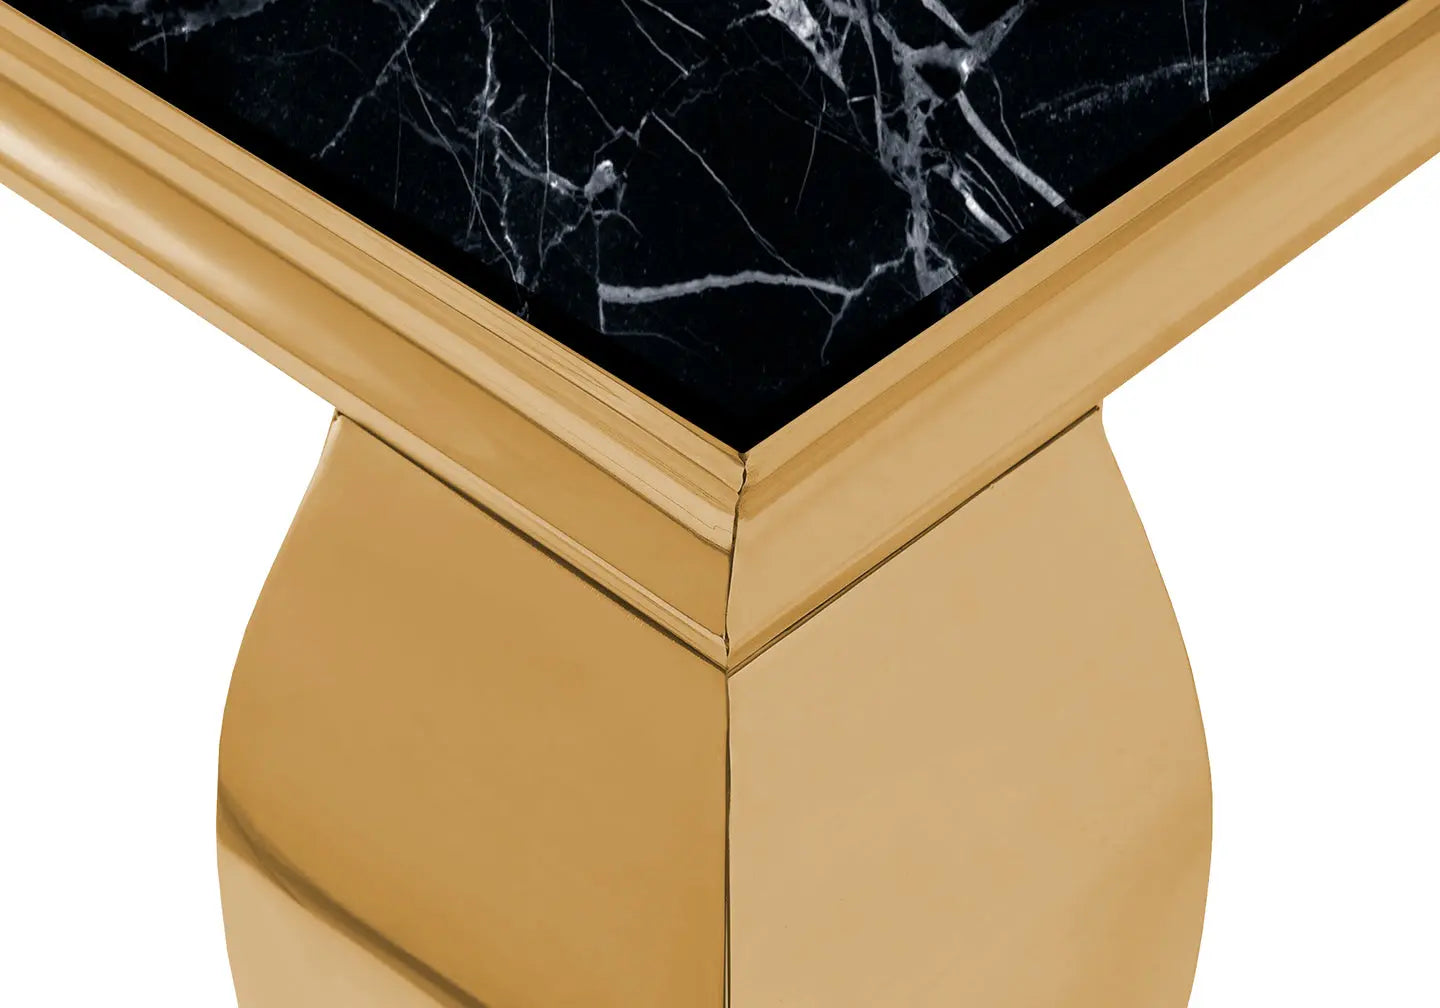 Meuble tv doré marbre noir NEO New Design